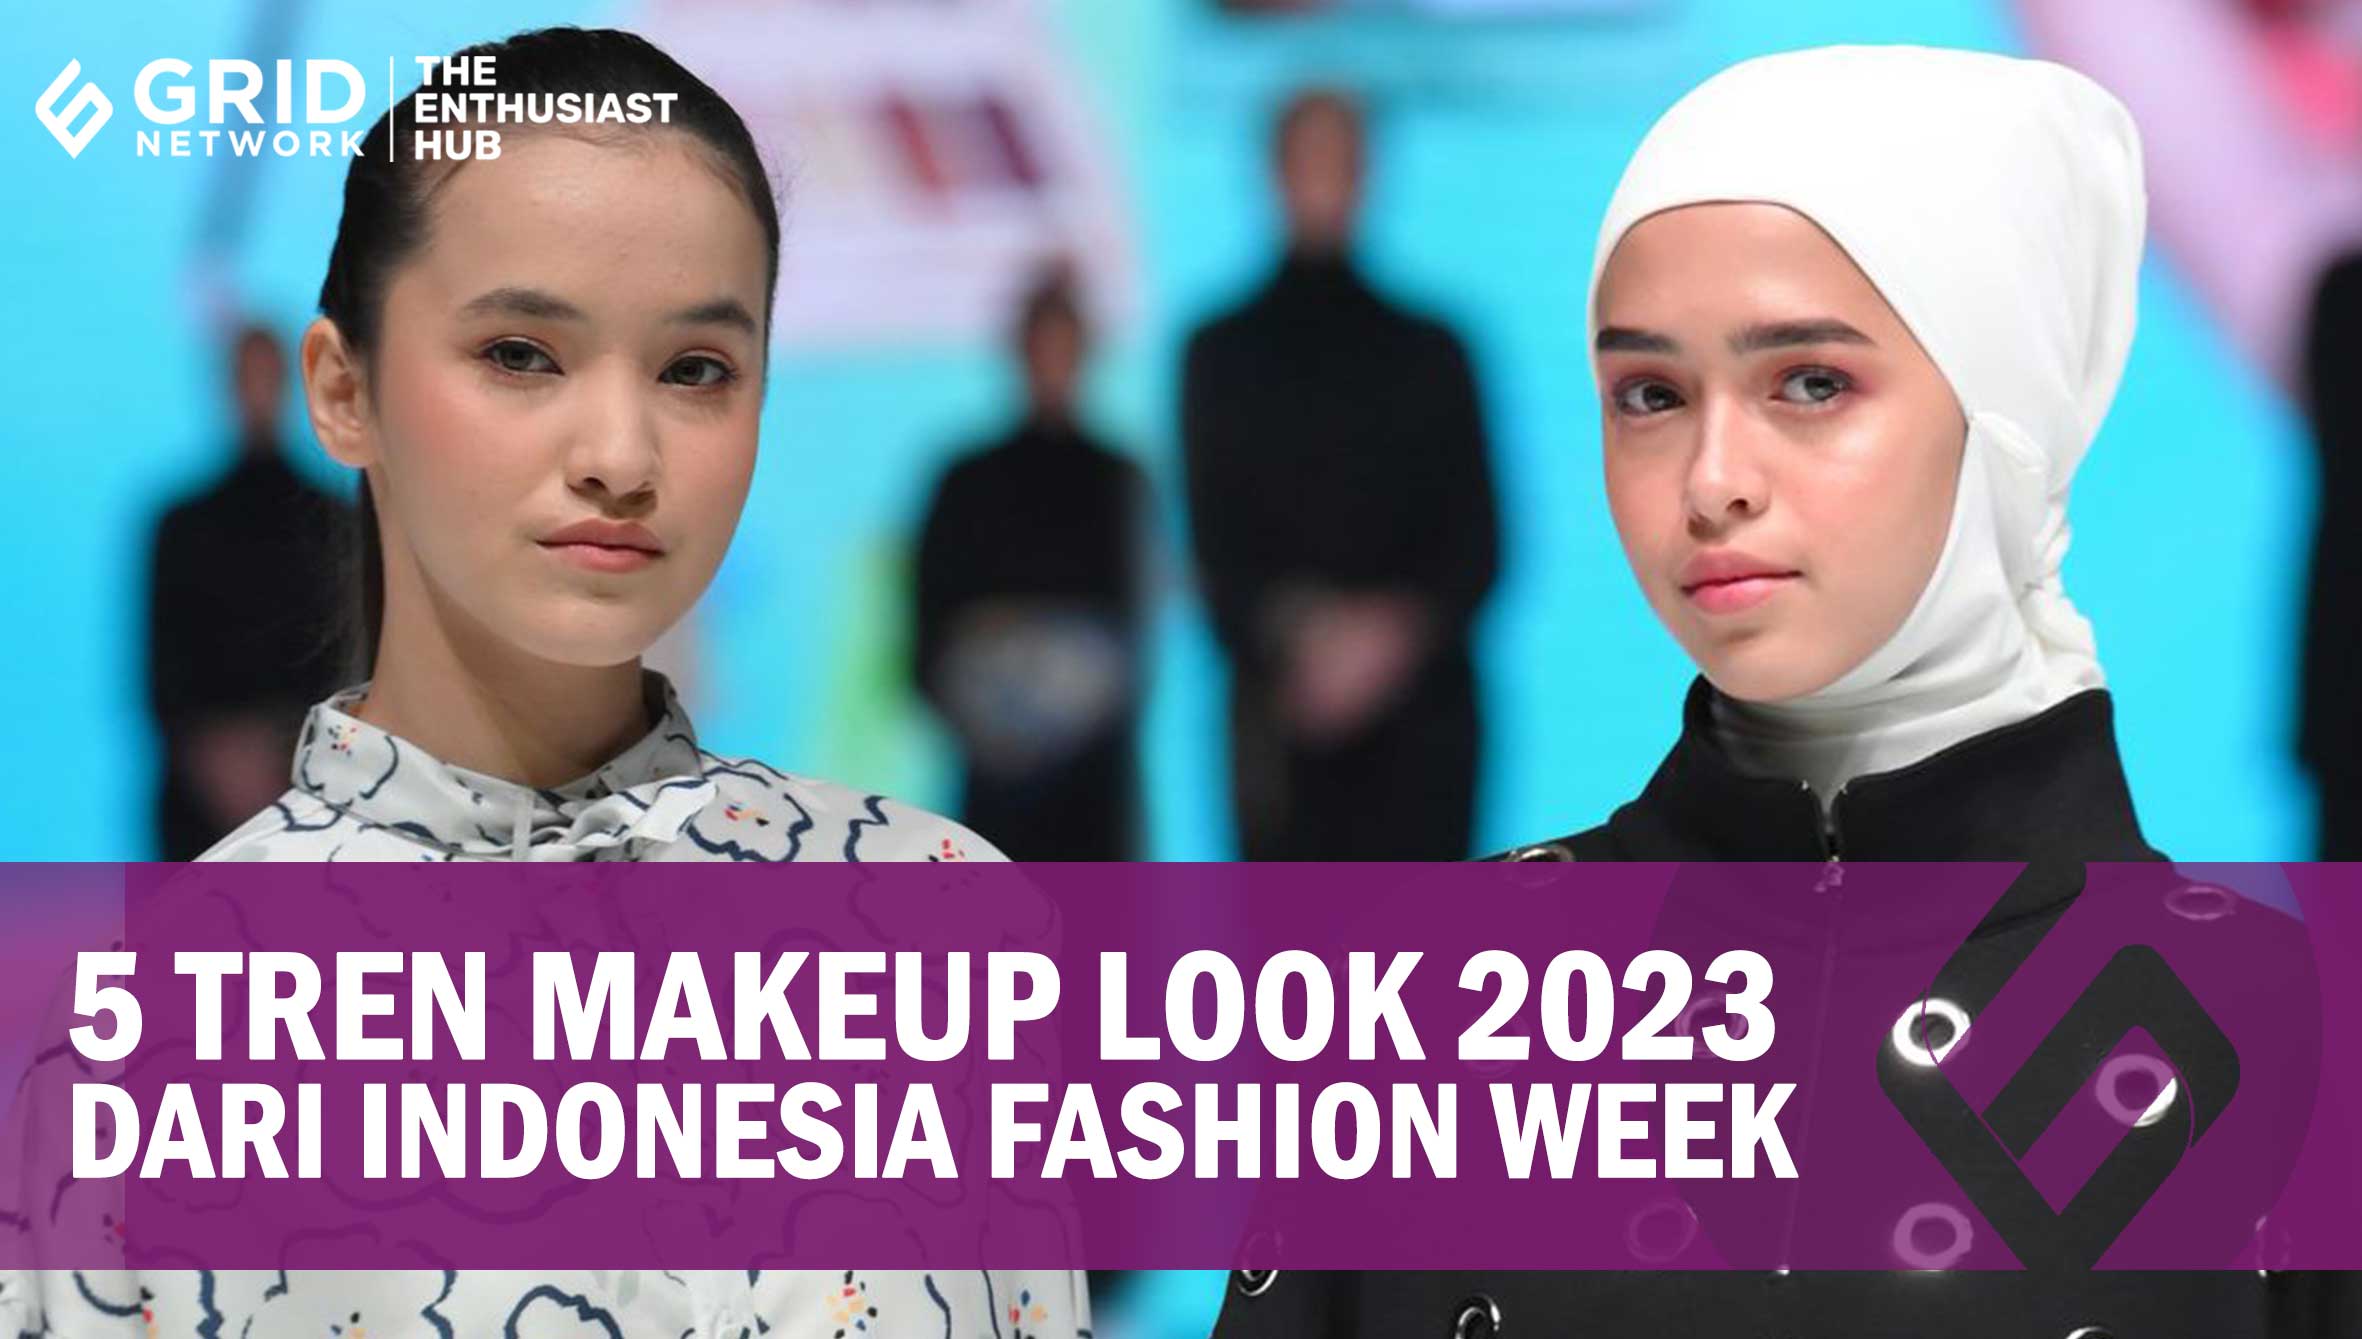 5 Tren Makeup Look 2023 dari Indonesia Fashion Week, Bisa untuk Kerja hingga Lebaran